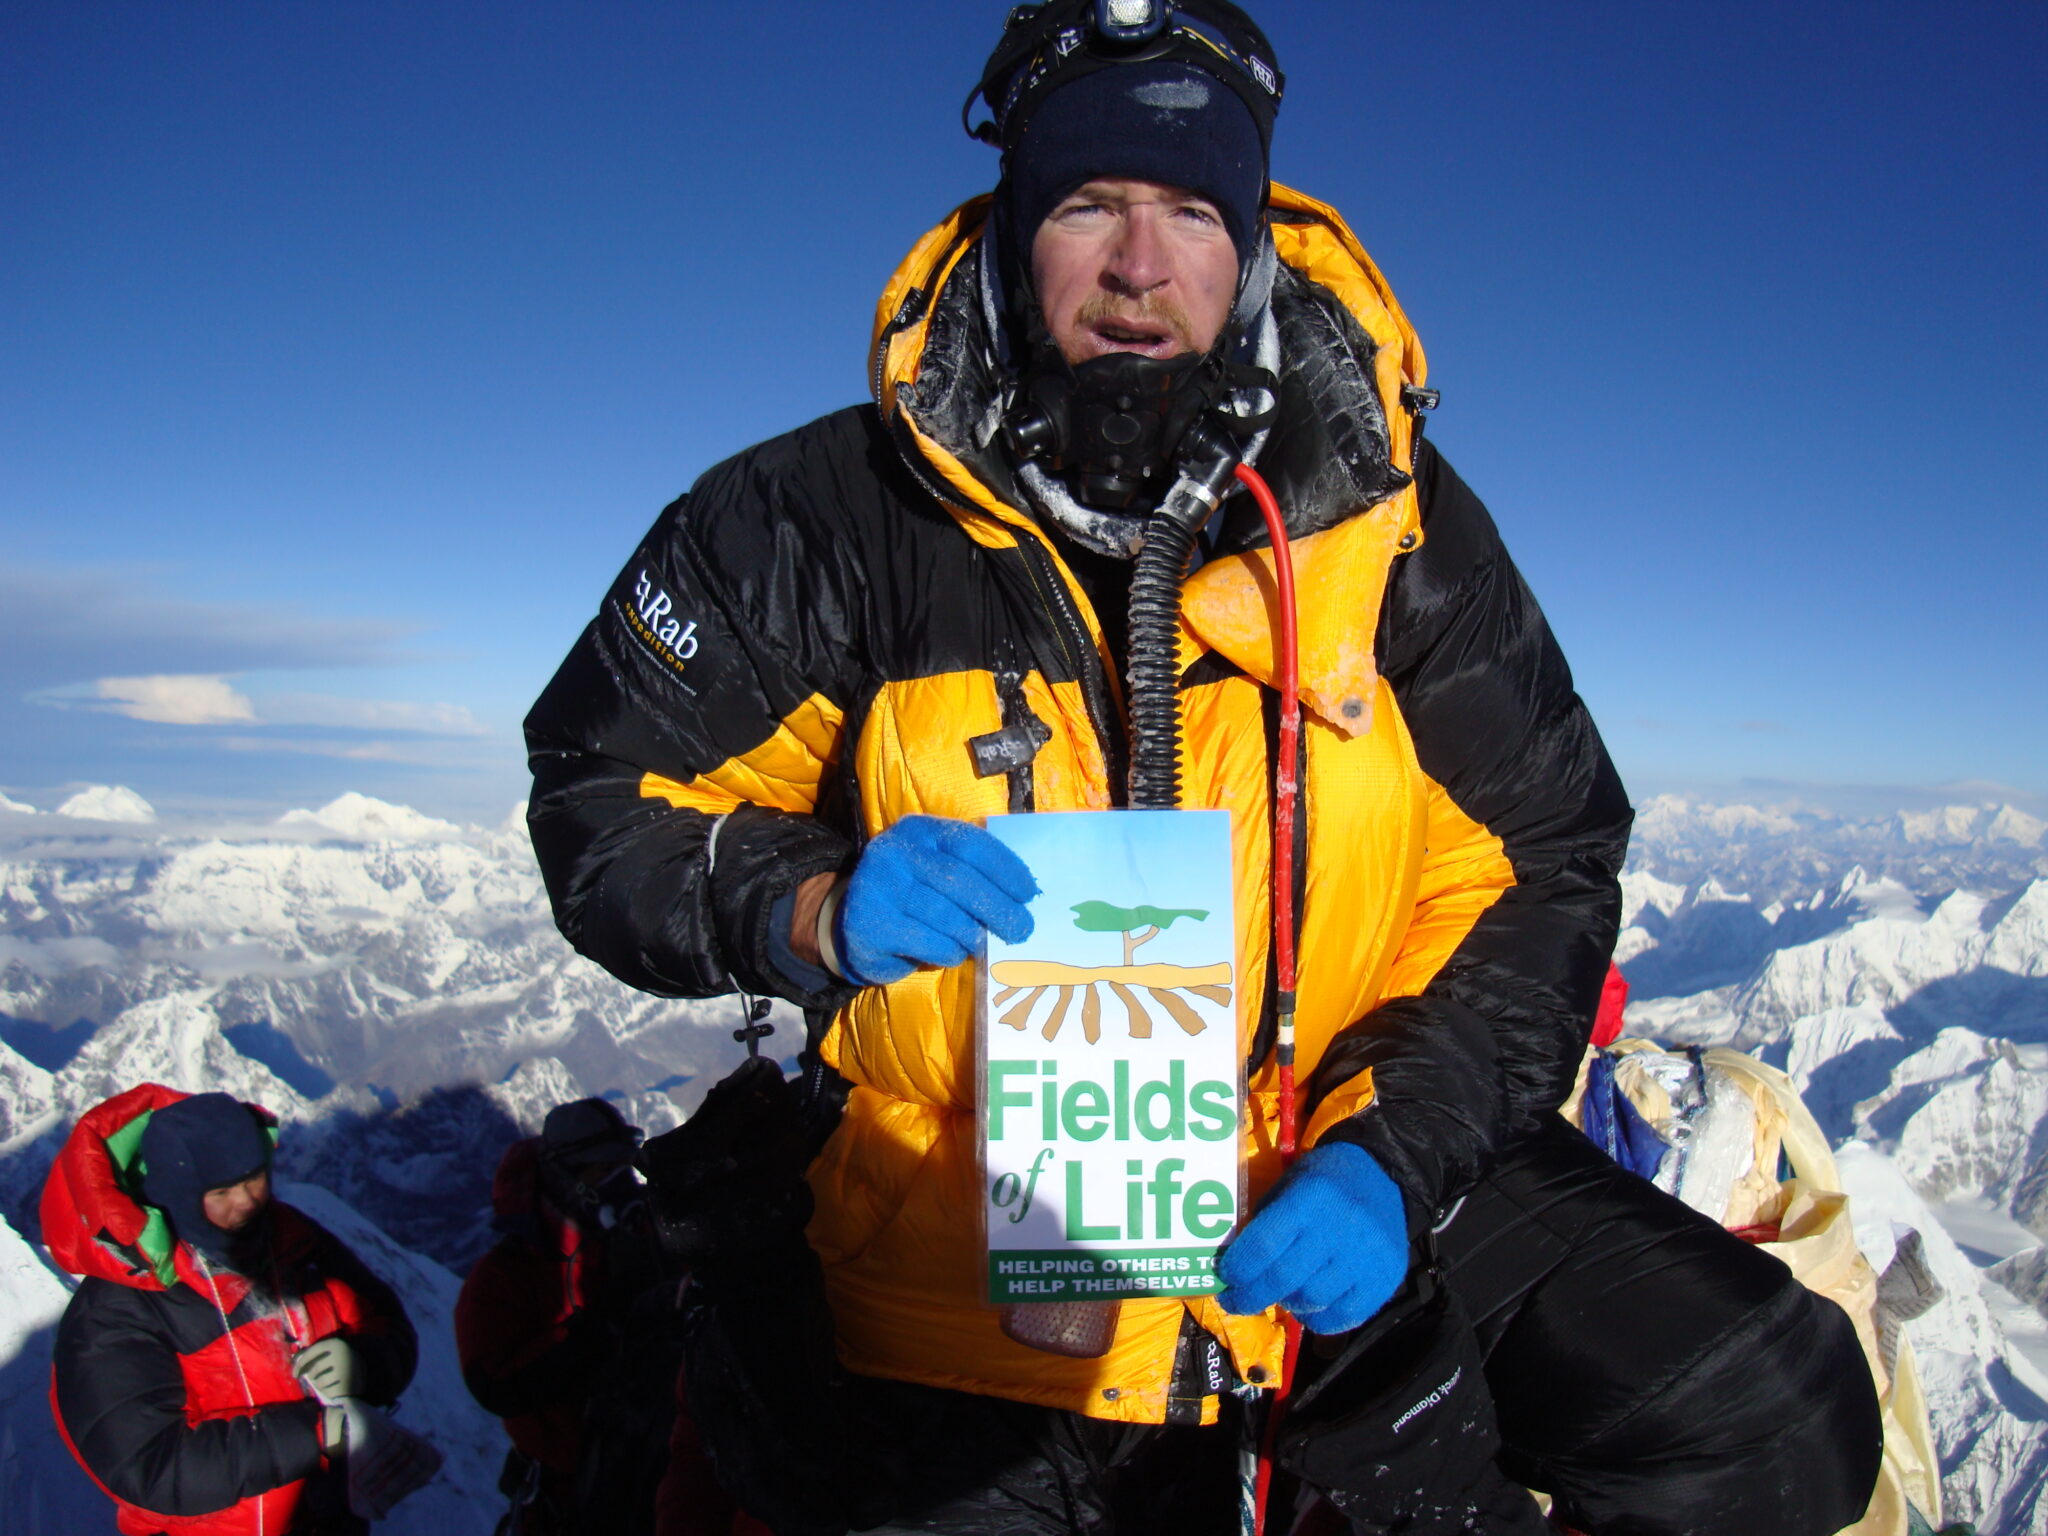 Ian on the summit of Everest